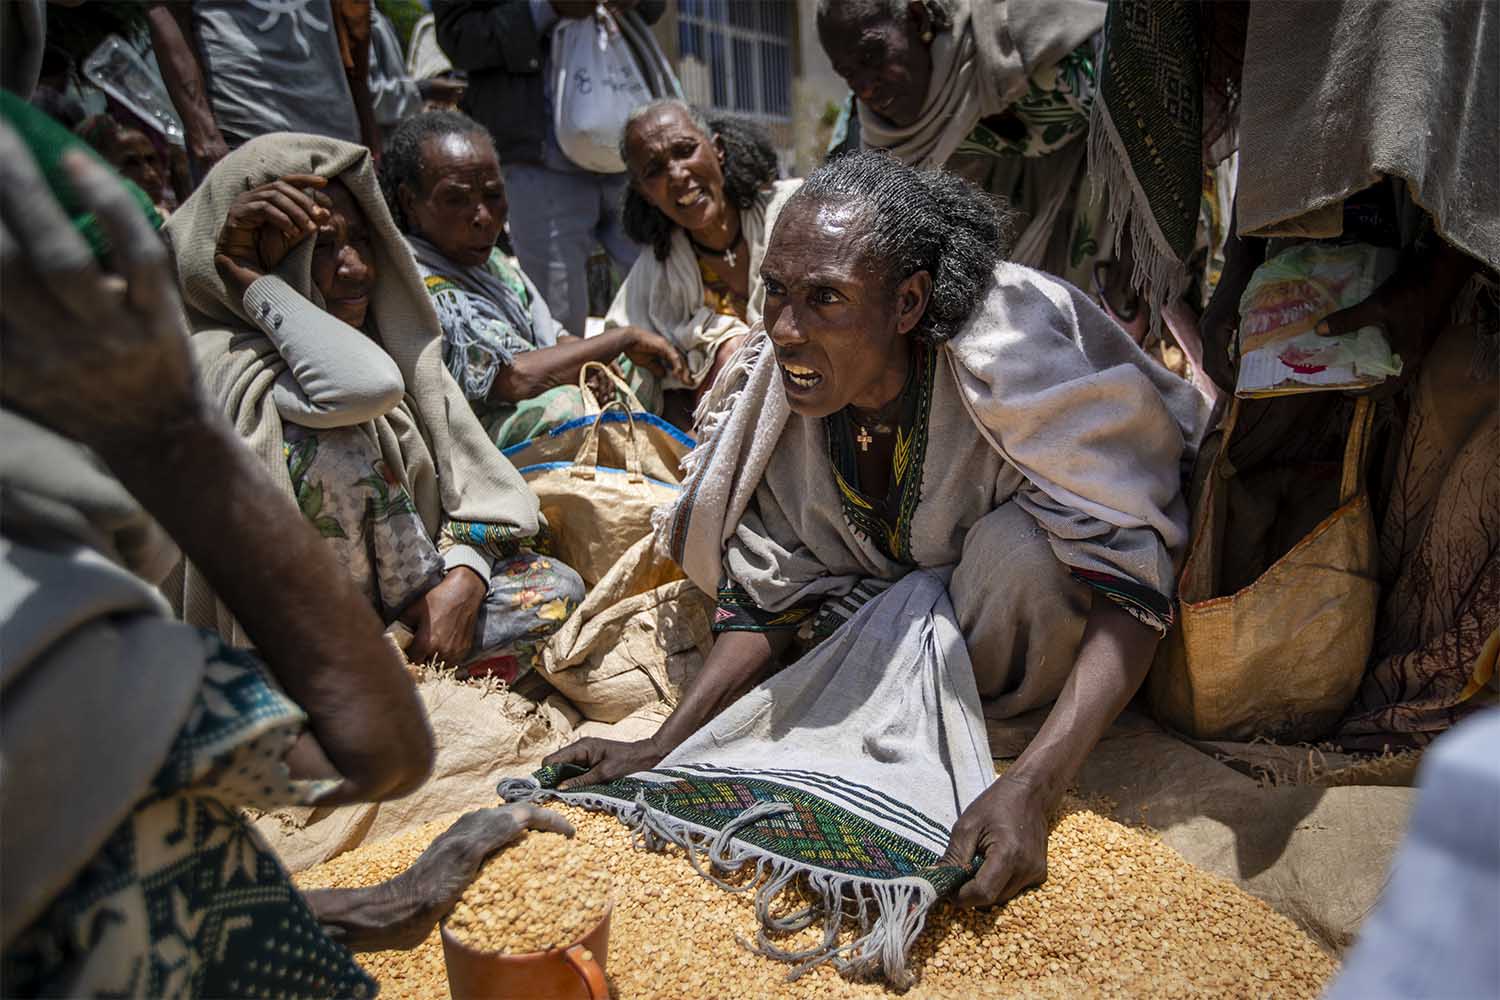 תושבת חבל תיגראי בצפון אתיופיה נאבקת על הקצאת אפונה צהובה שחולקה על ידי ארגון סיוע בעיירה אגולה, מלחמת האזרחים המתמשכת במדינה יצרה משבר הומניטרי. 8 במאי 2021 (צילום: AP Photo/Ben Curtis)